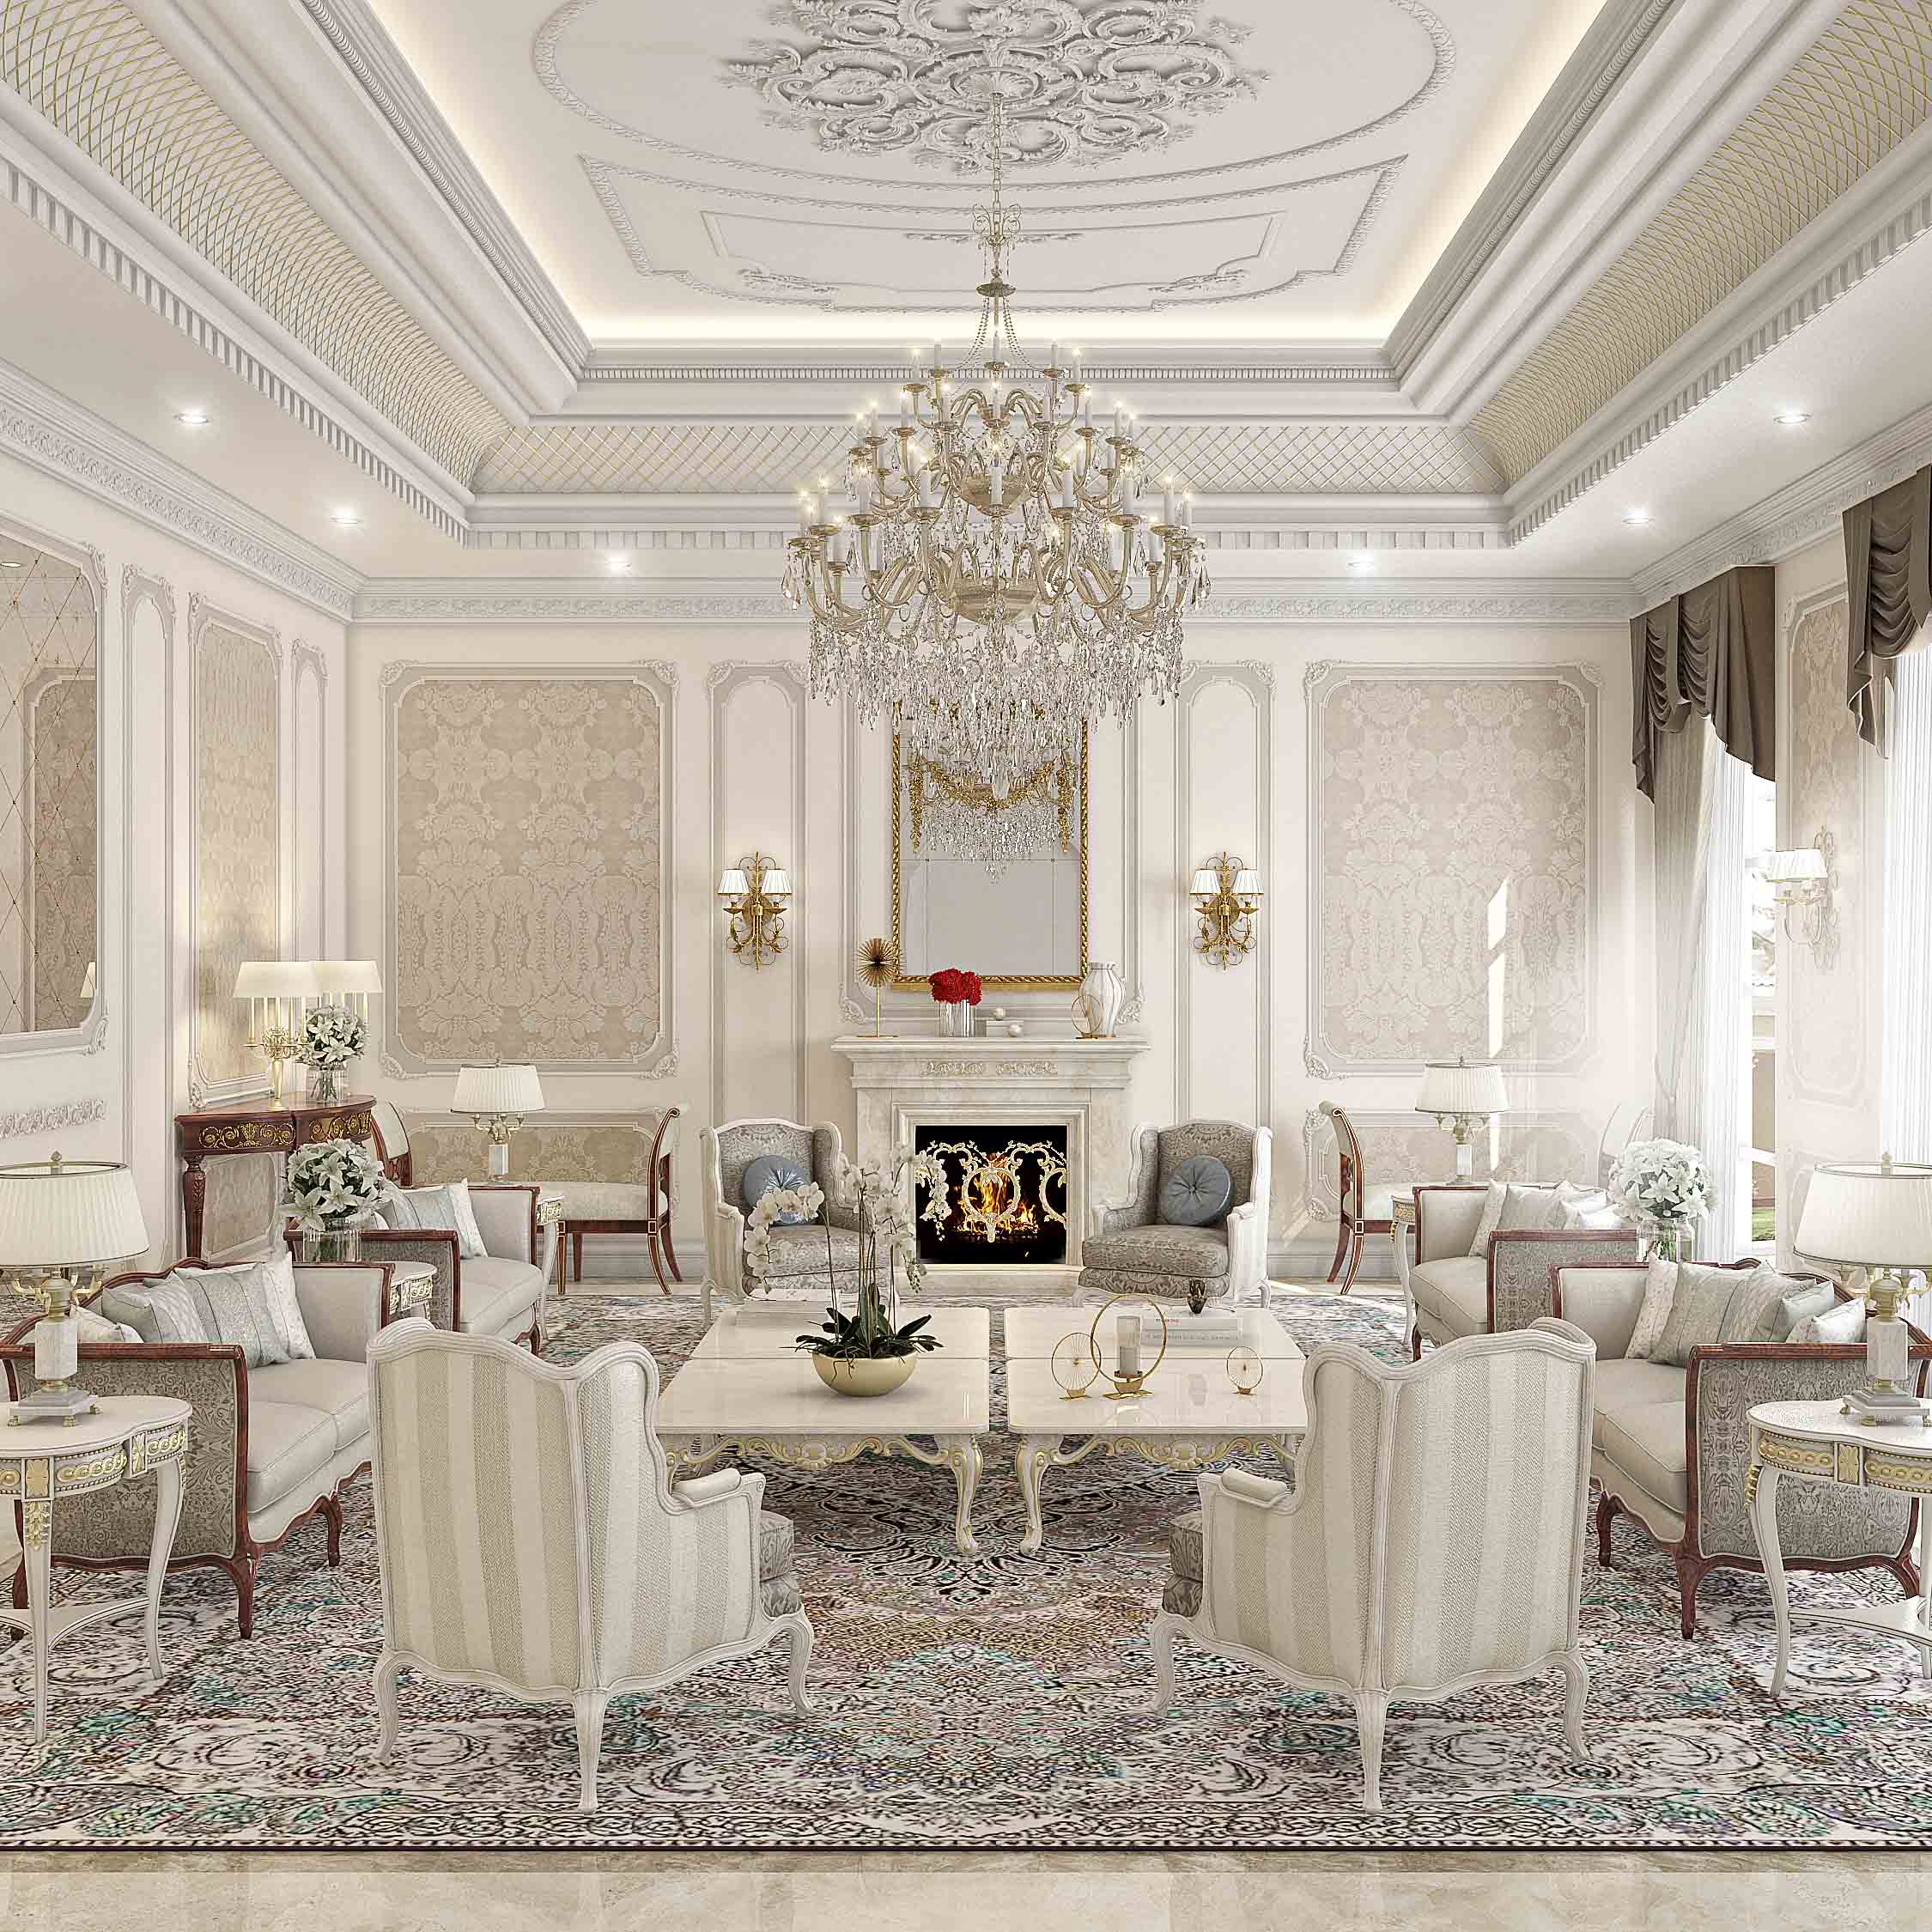 Classic luxury furniture for elegant baroque Italian